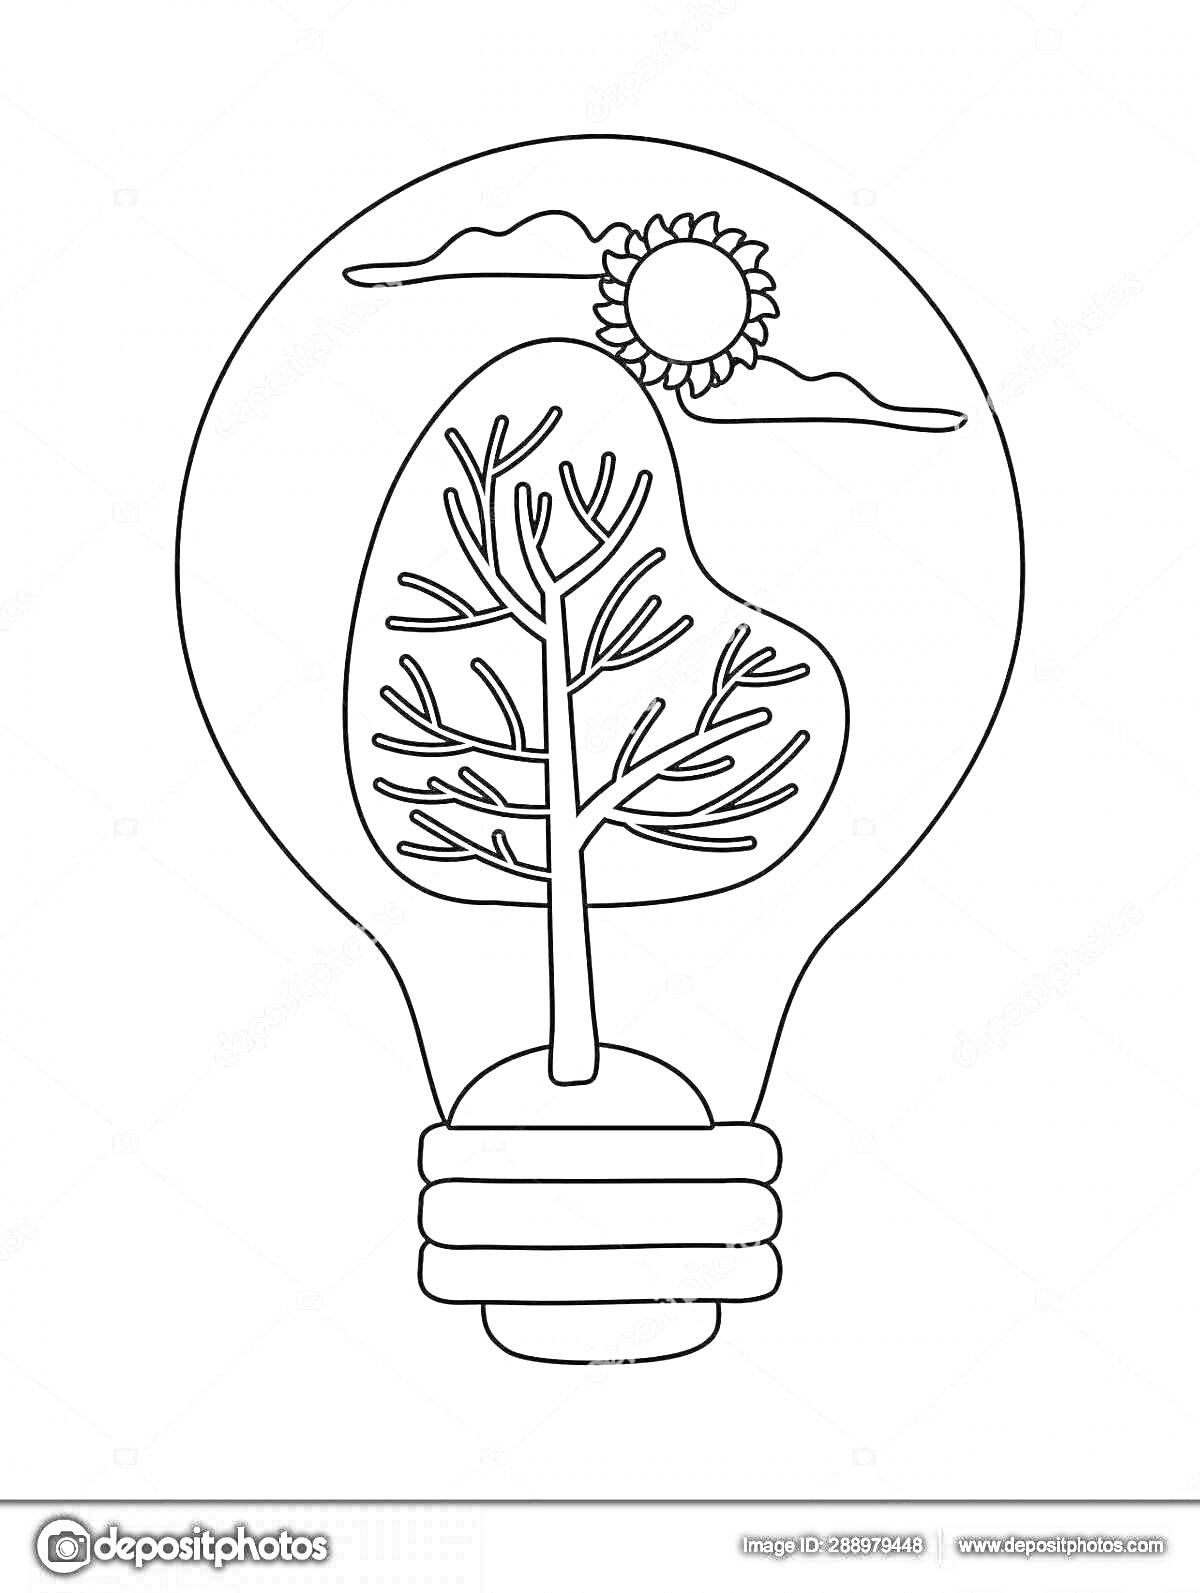 На раскраске изображено: Лампа, Электричество, Солнце, Природа, Обучение, Творчество